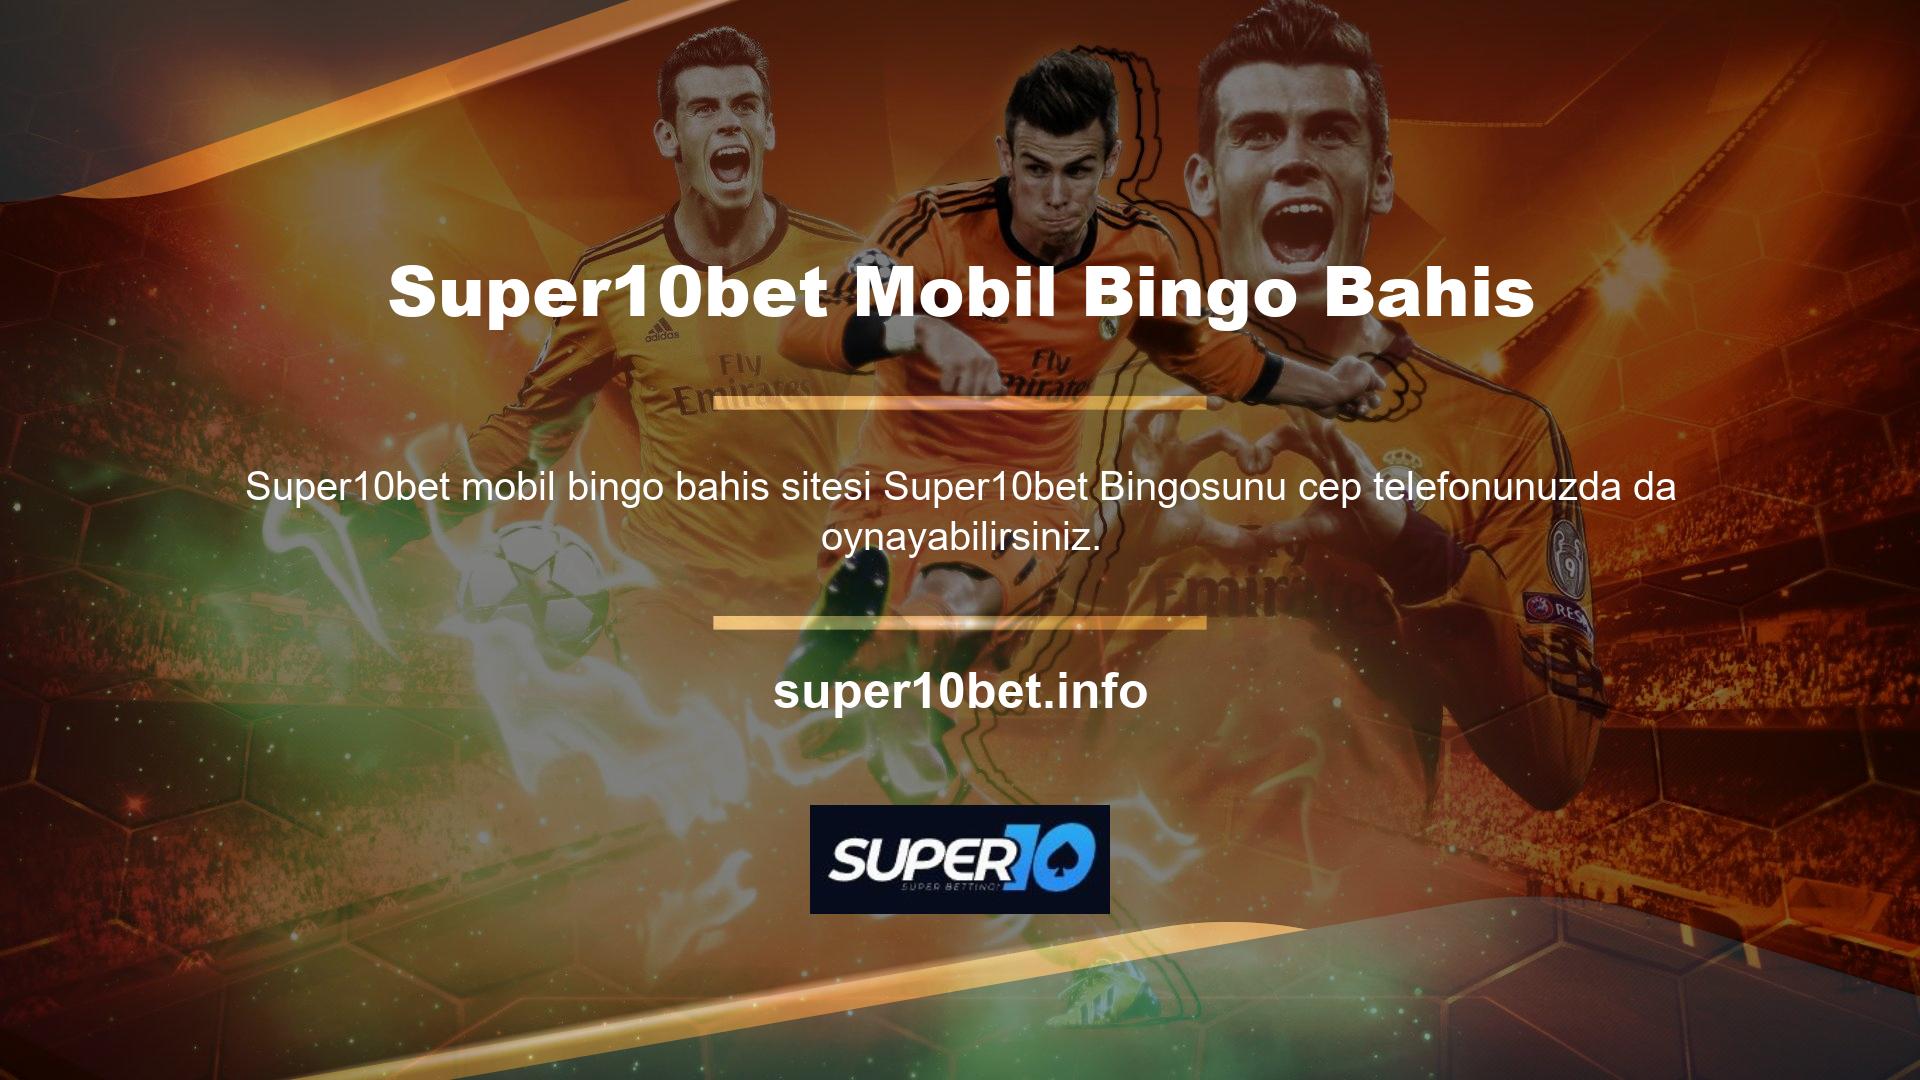 Üyeler Super10bet Mobil Bingo Bahis bilgisayarlarında yaptıkları gibi yatırımlarıyla bir tombala oyunu başlatabilirler